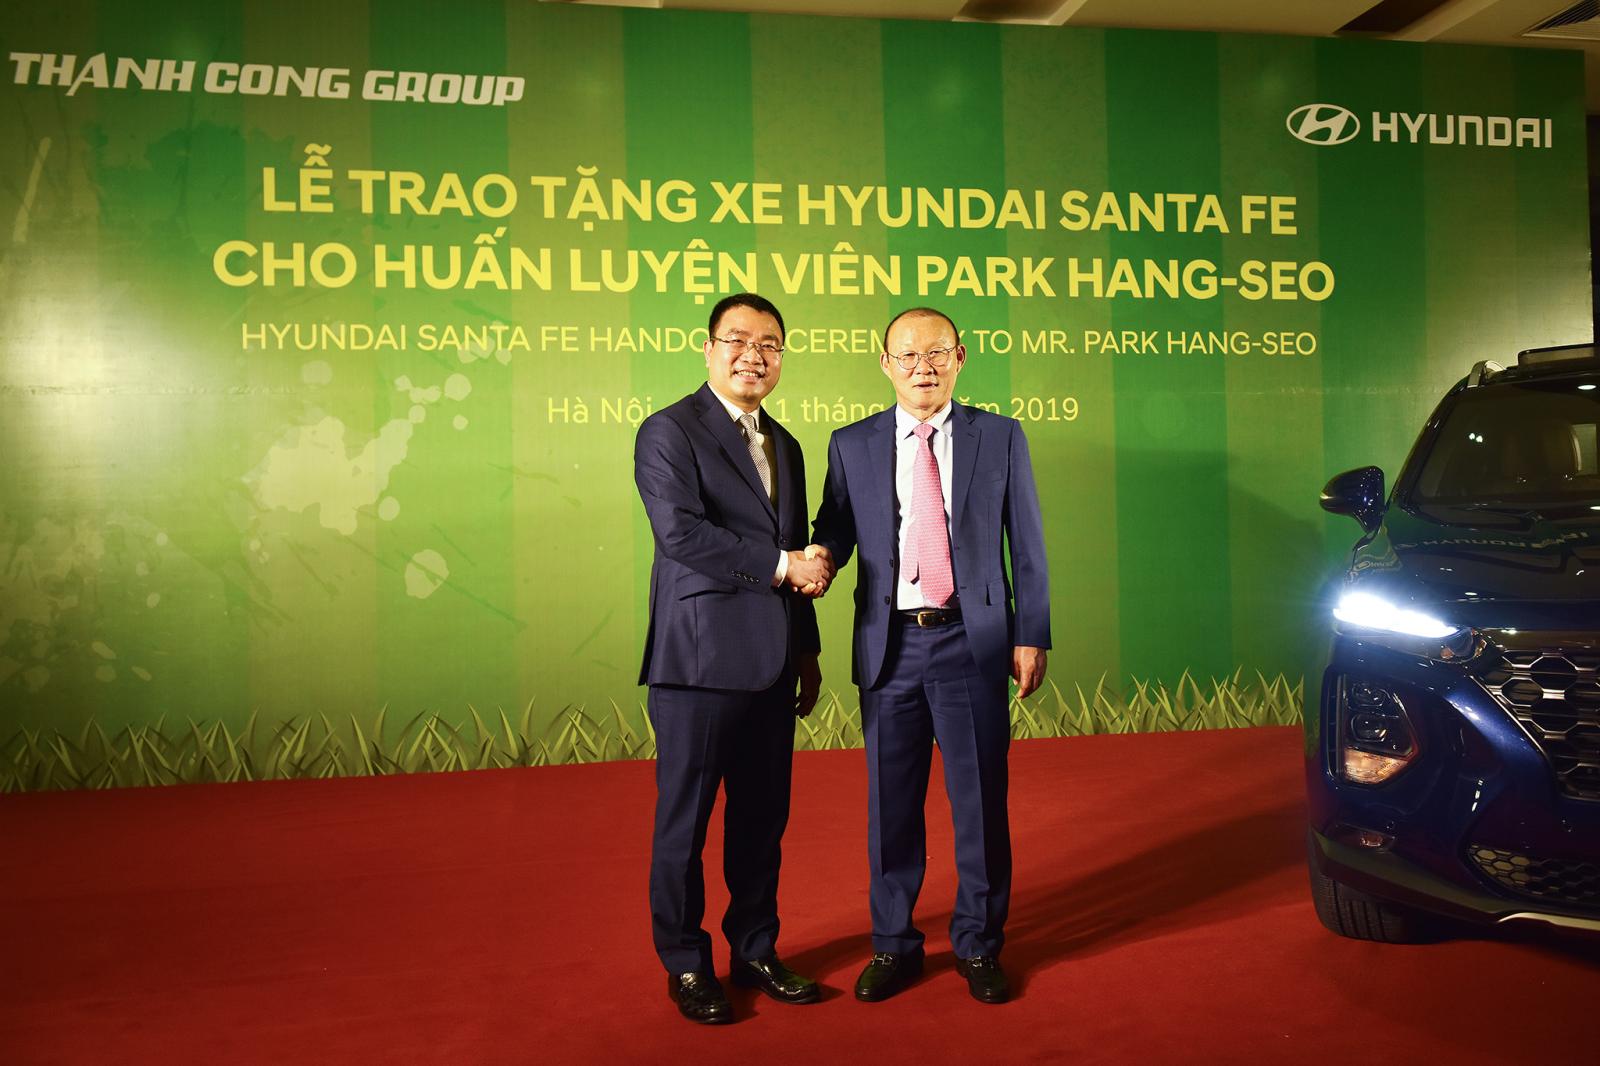 Đại diện Hyundai Thành Công trao tặng chiếc Hyundai Santa Fe cho ông Park Hang Seo a3